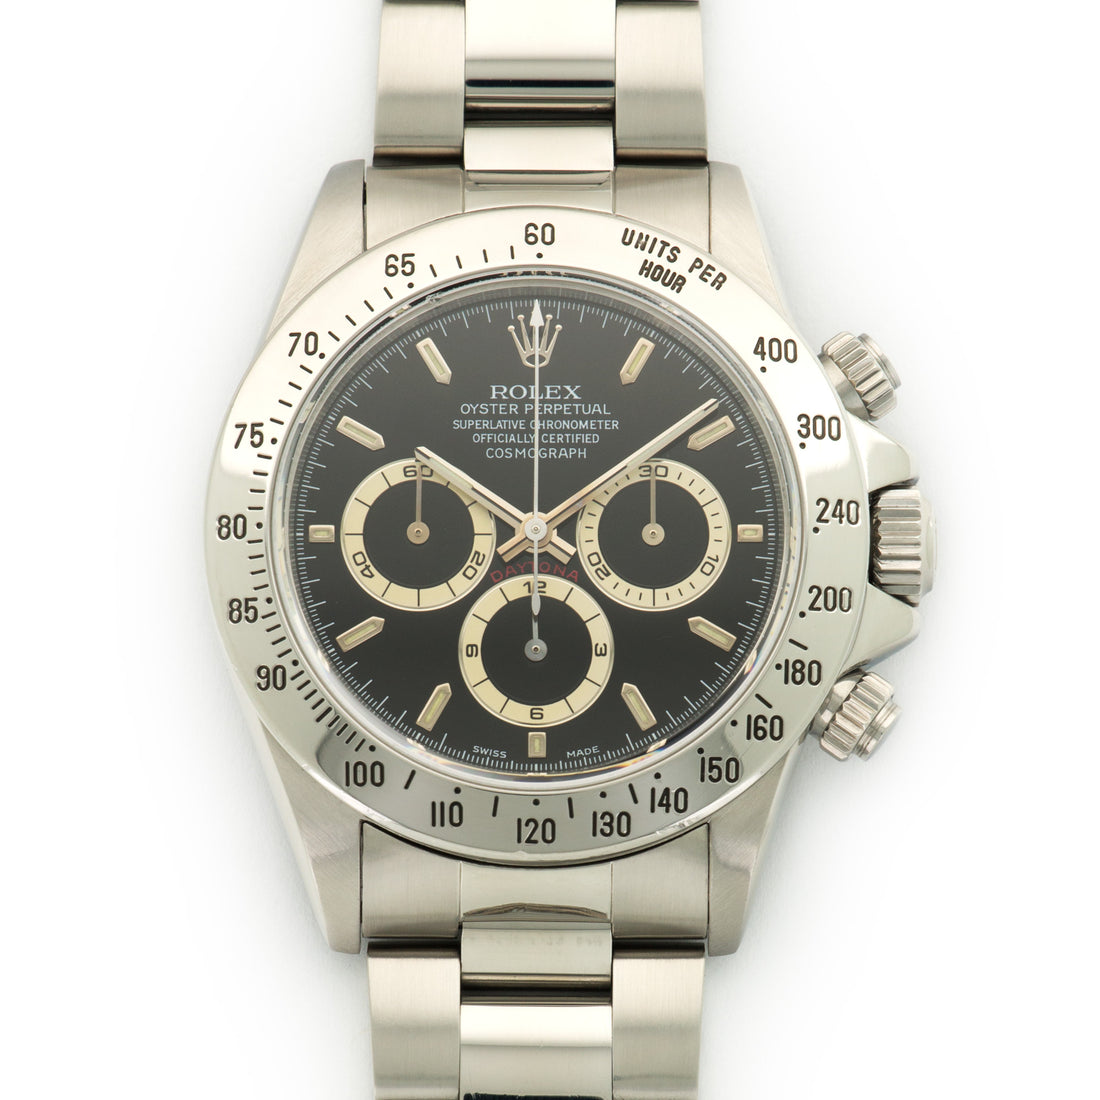 Daytona 16520 Steel Keystone Watches